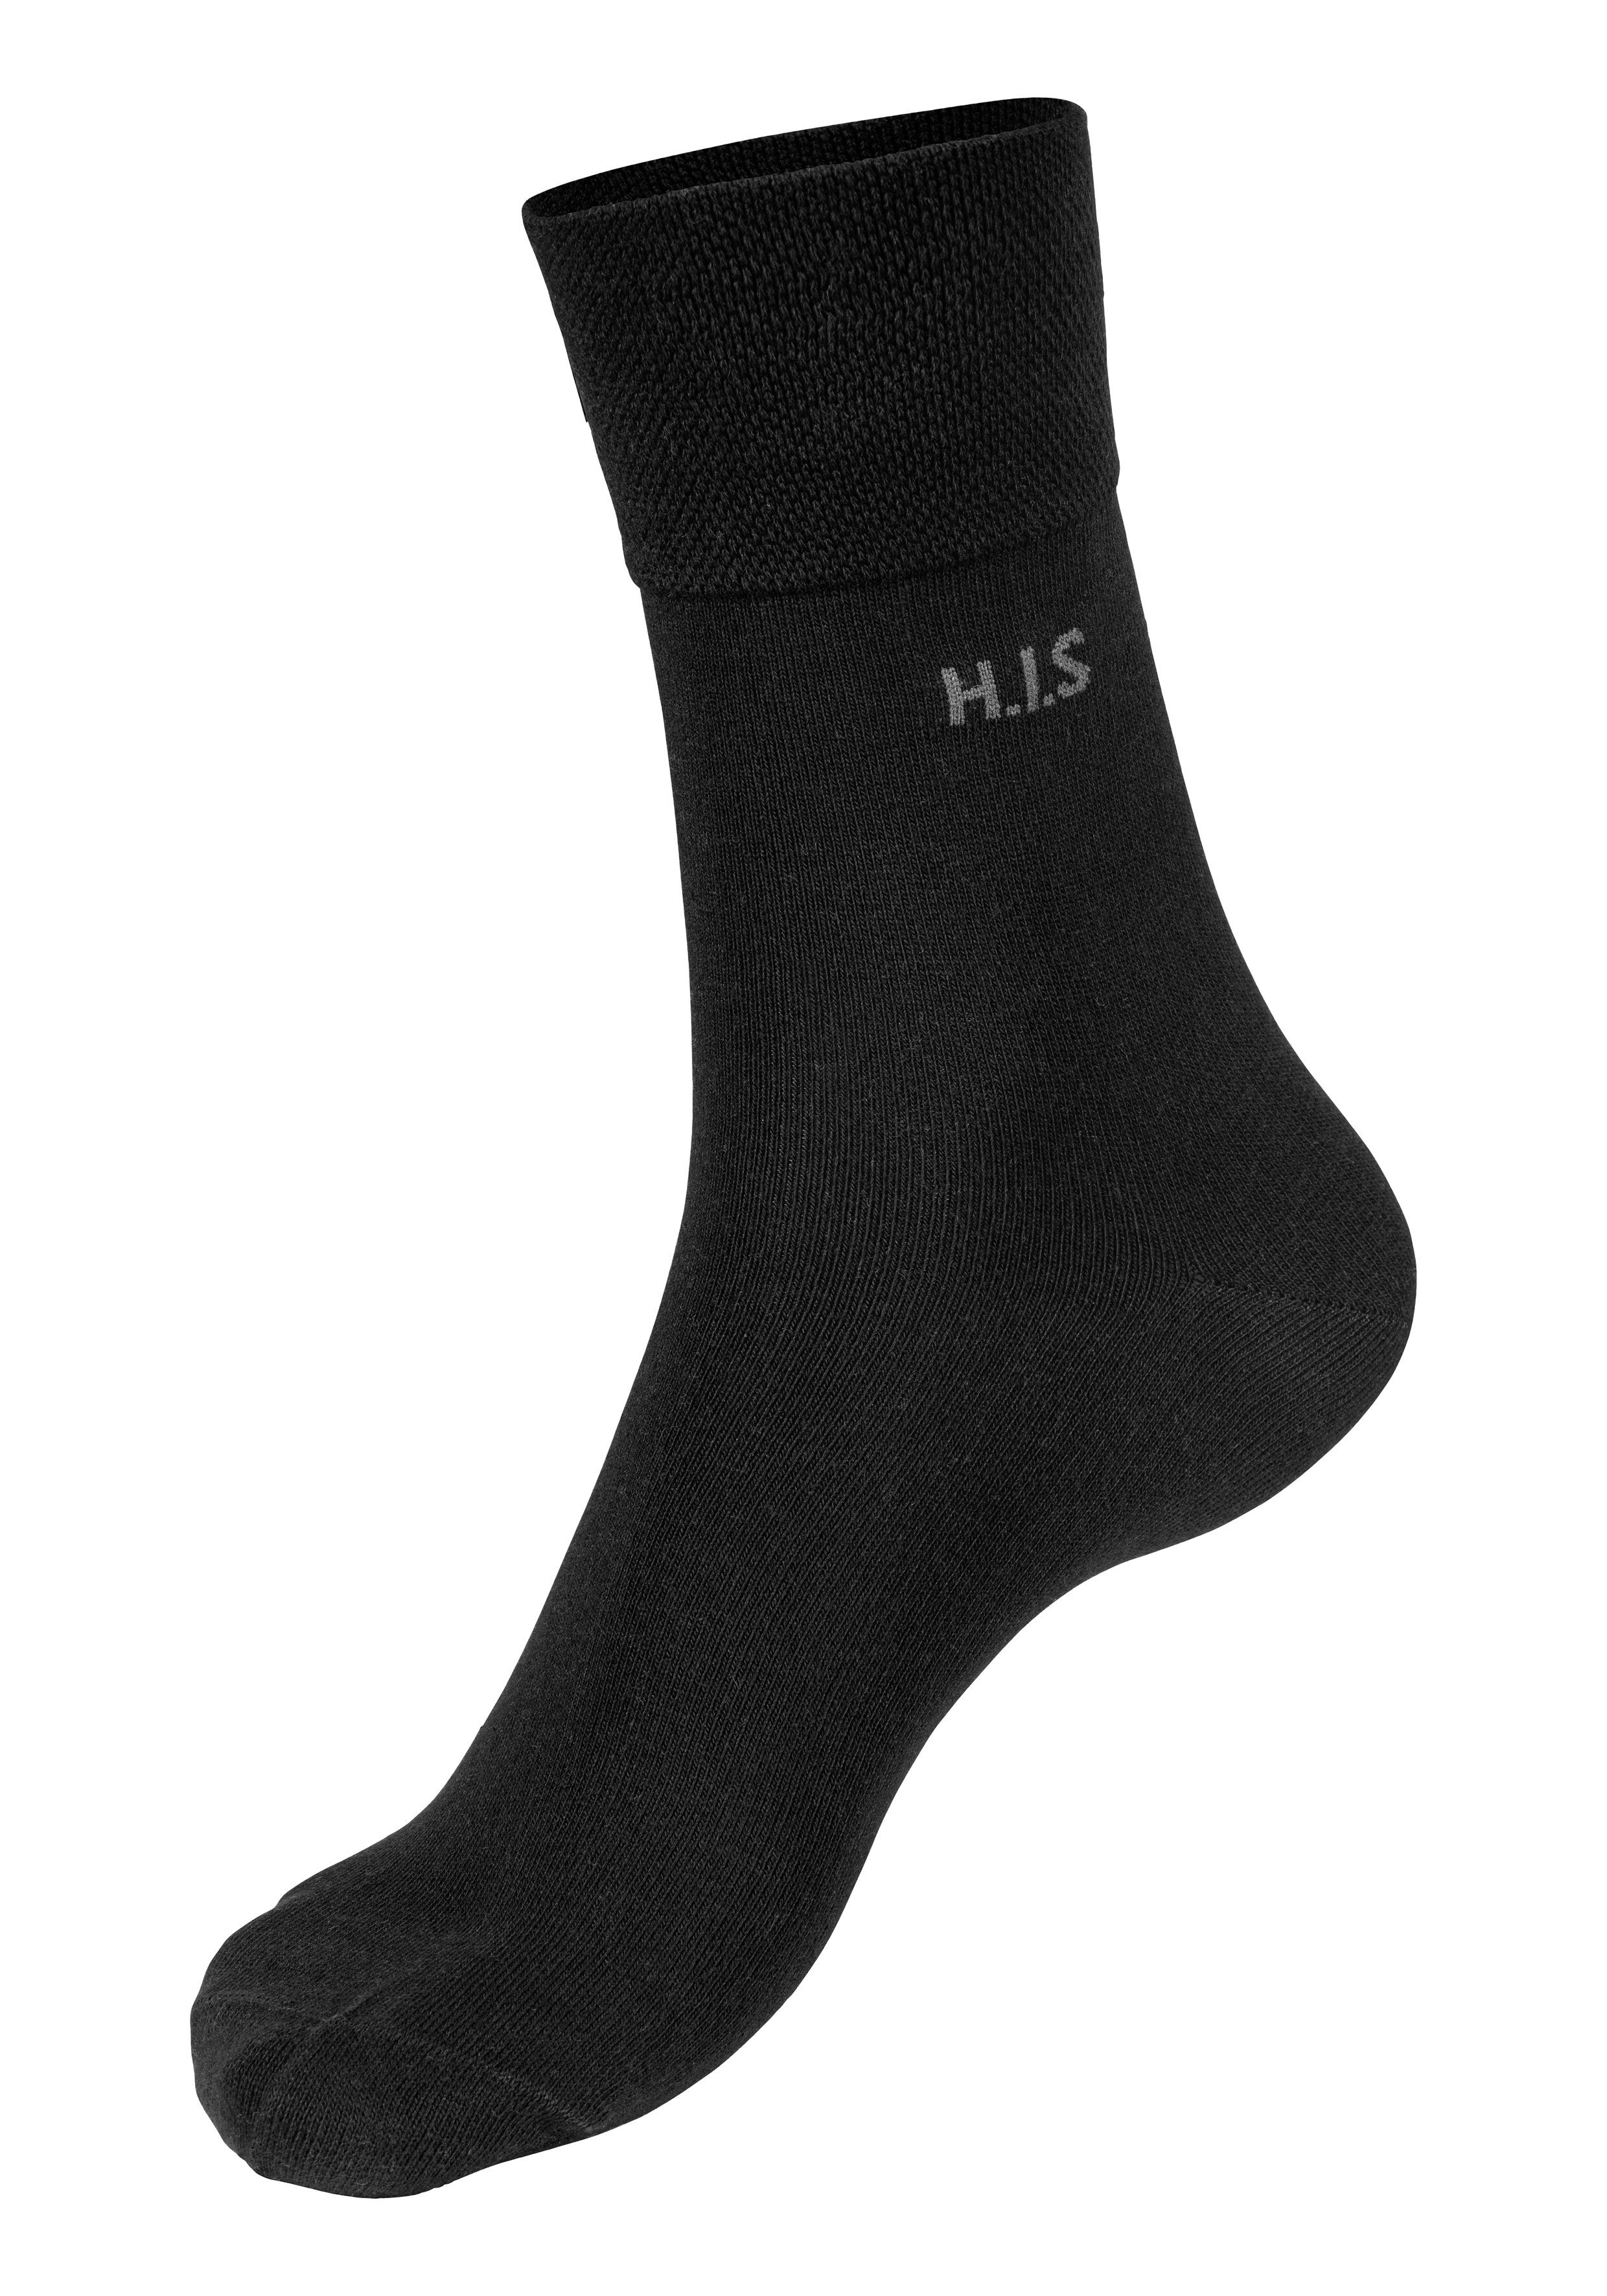 Gummi ohne 12x 12-Paar) einschneidendes schwarz H.I.S Socken (Packung,